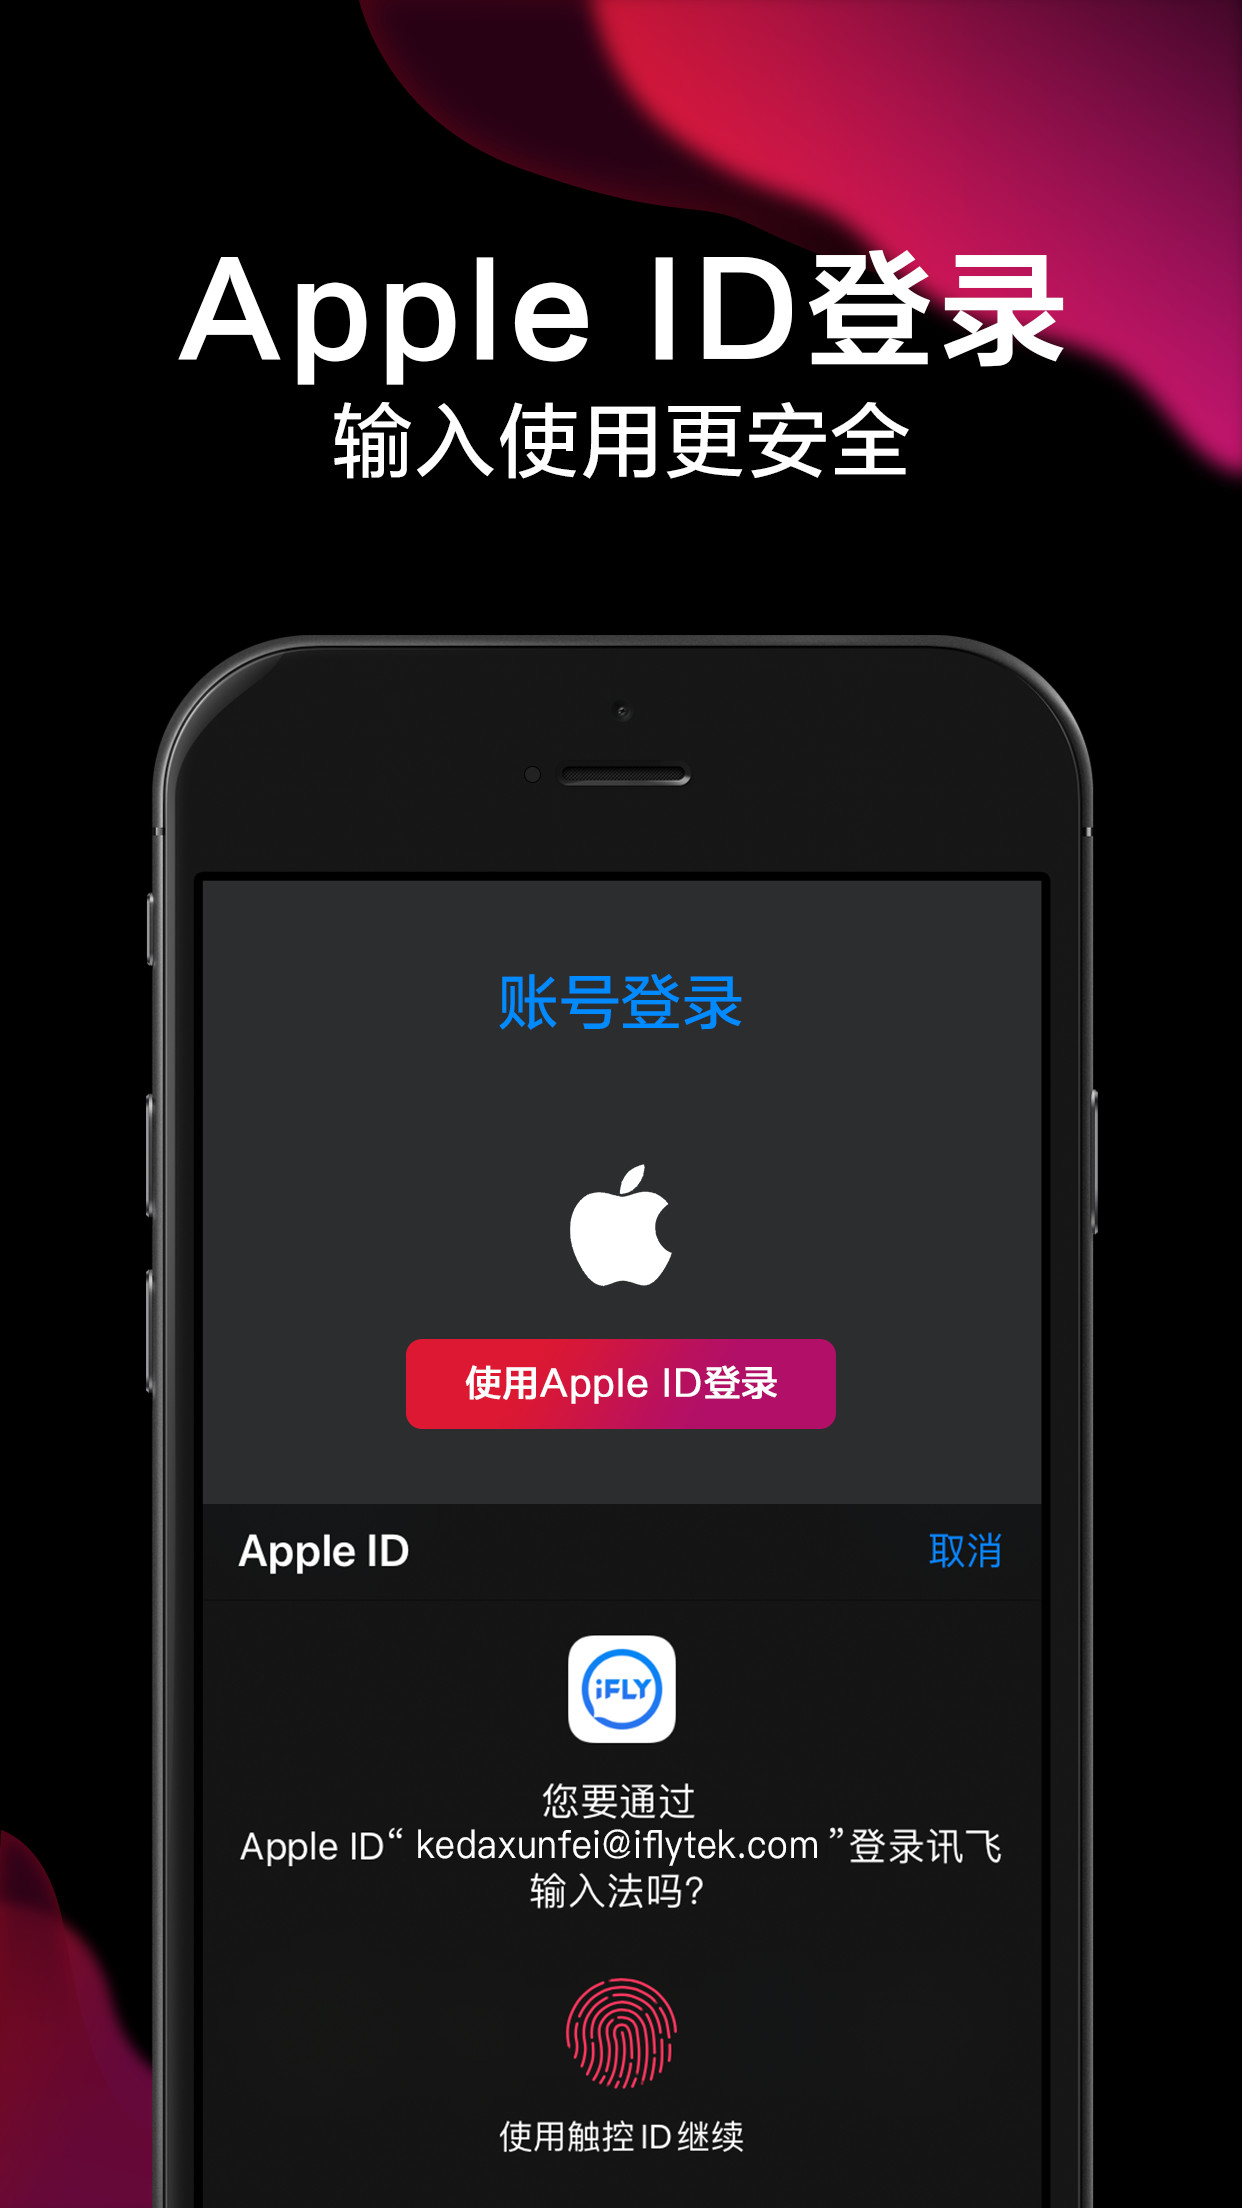 讯飞语音输入法iPhone版 V9.1.2788